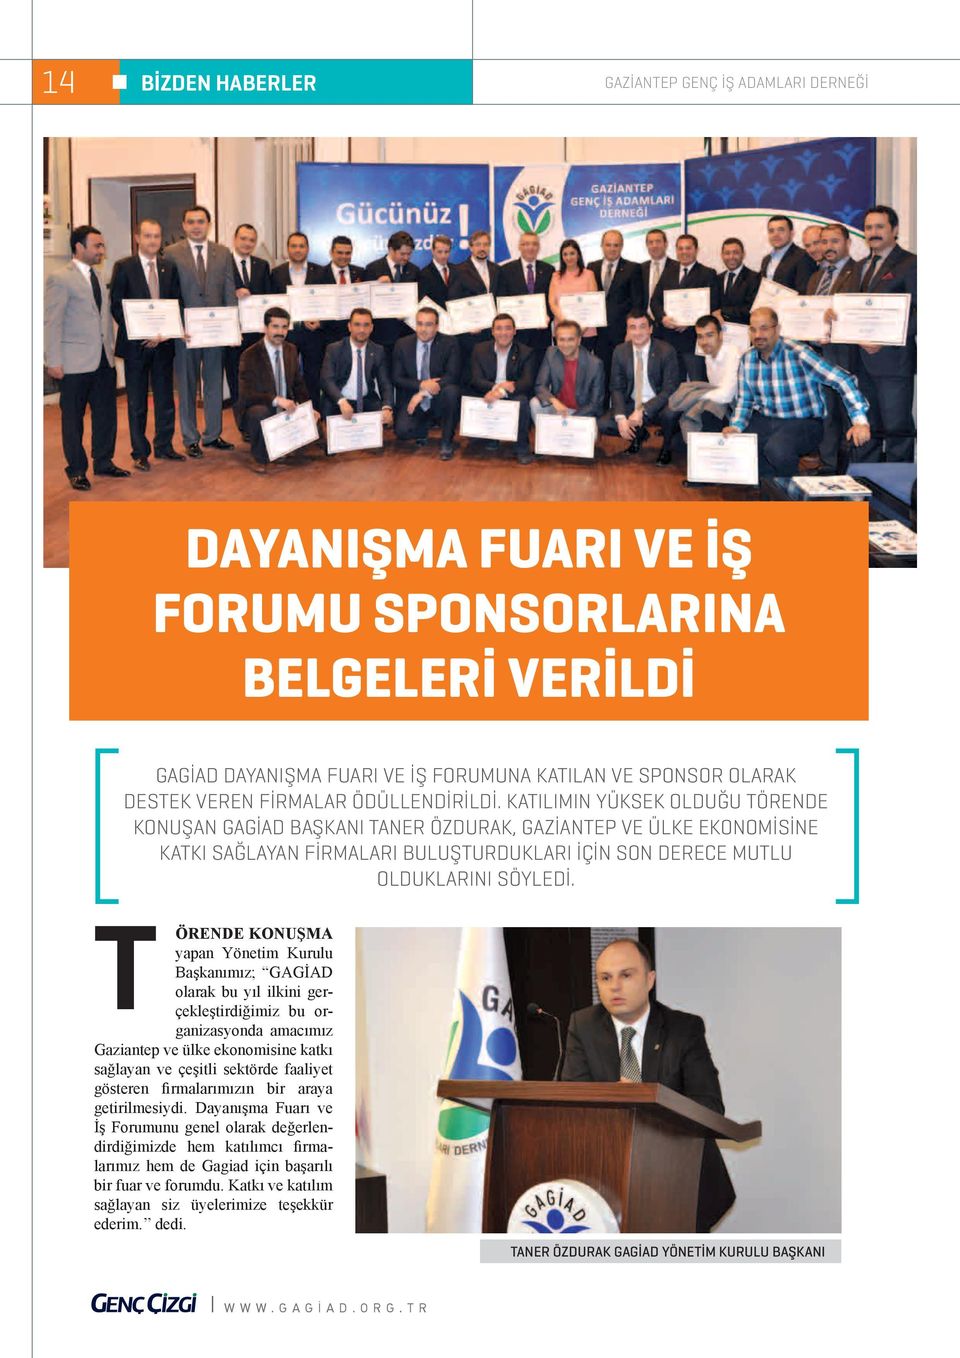 Katılımın yüksek olduğu törende konuşan GAGİAD Başkanı Taner Özdurak, Gaziantep ve ülke ekonomisine katkı sağlayan firmaları buluşturdukları için son derece mutlu olduklarını söyledi.